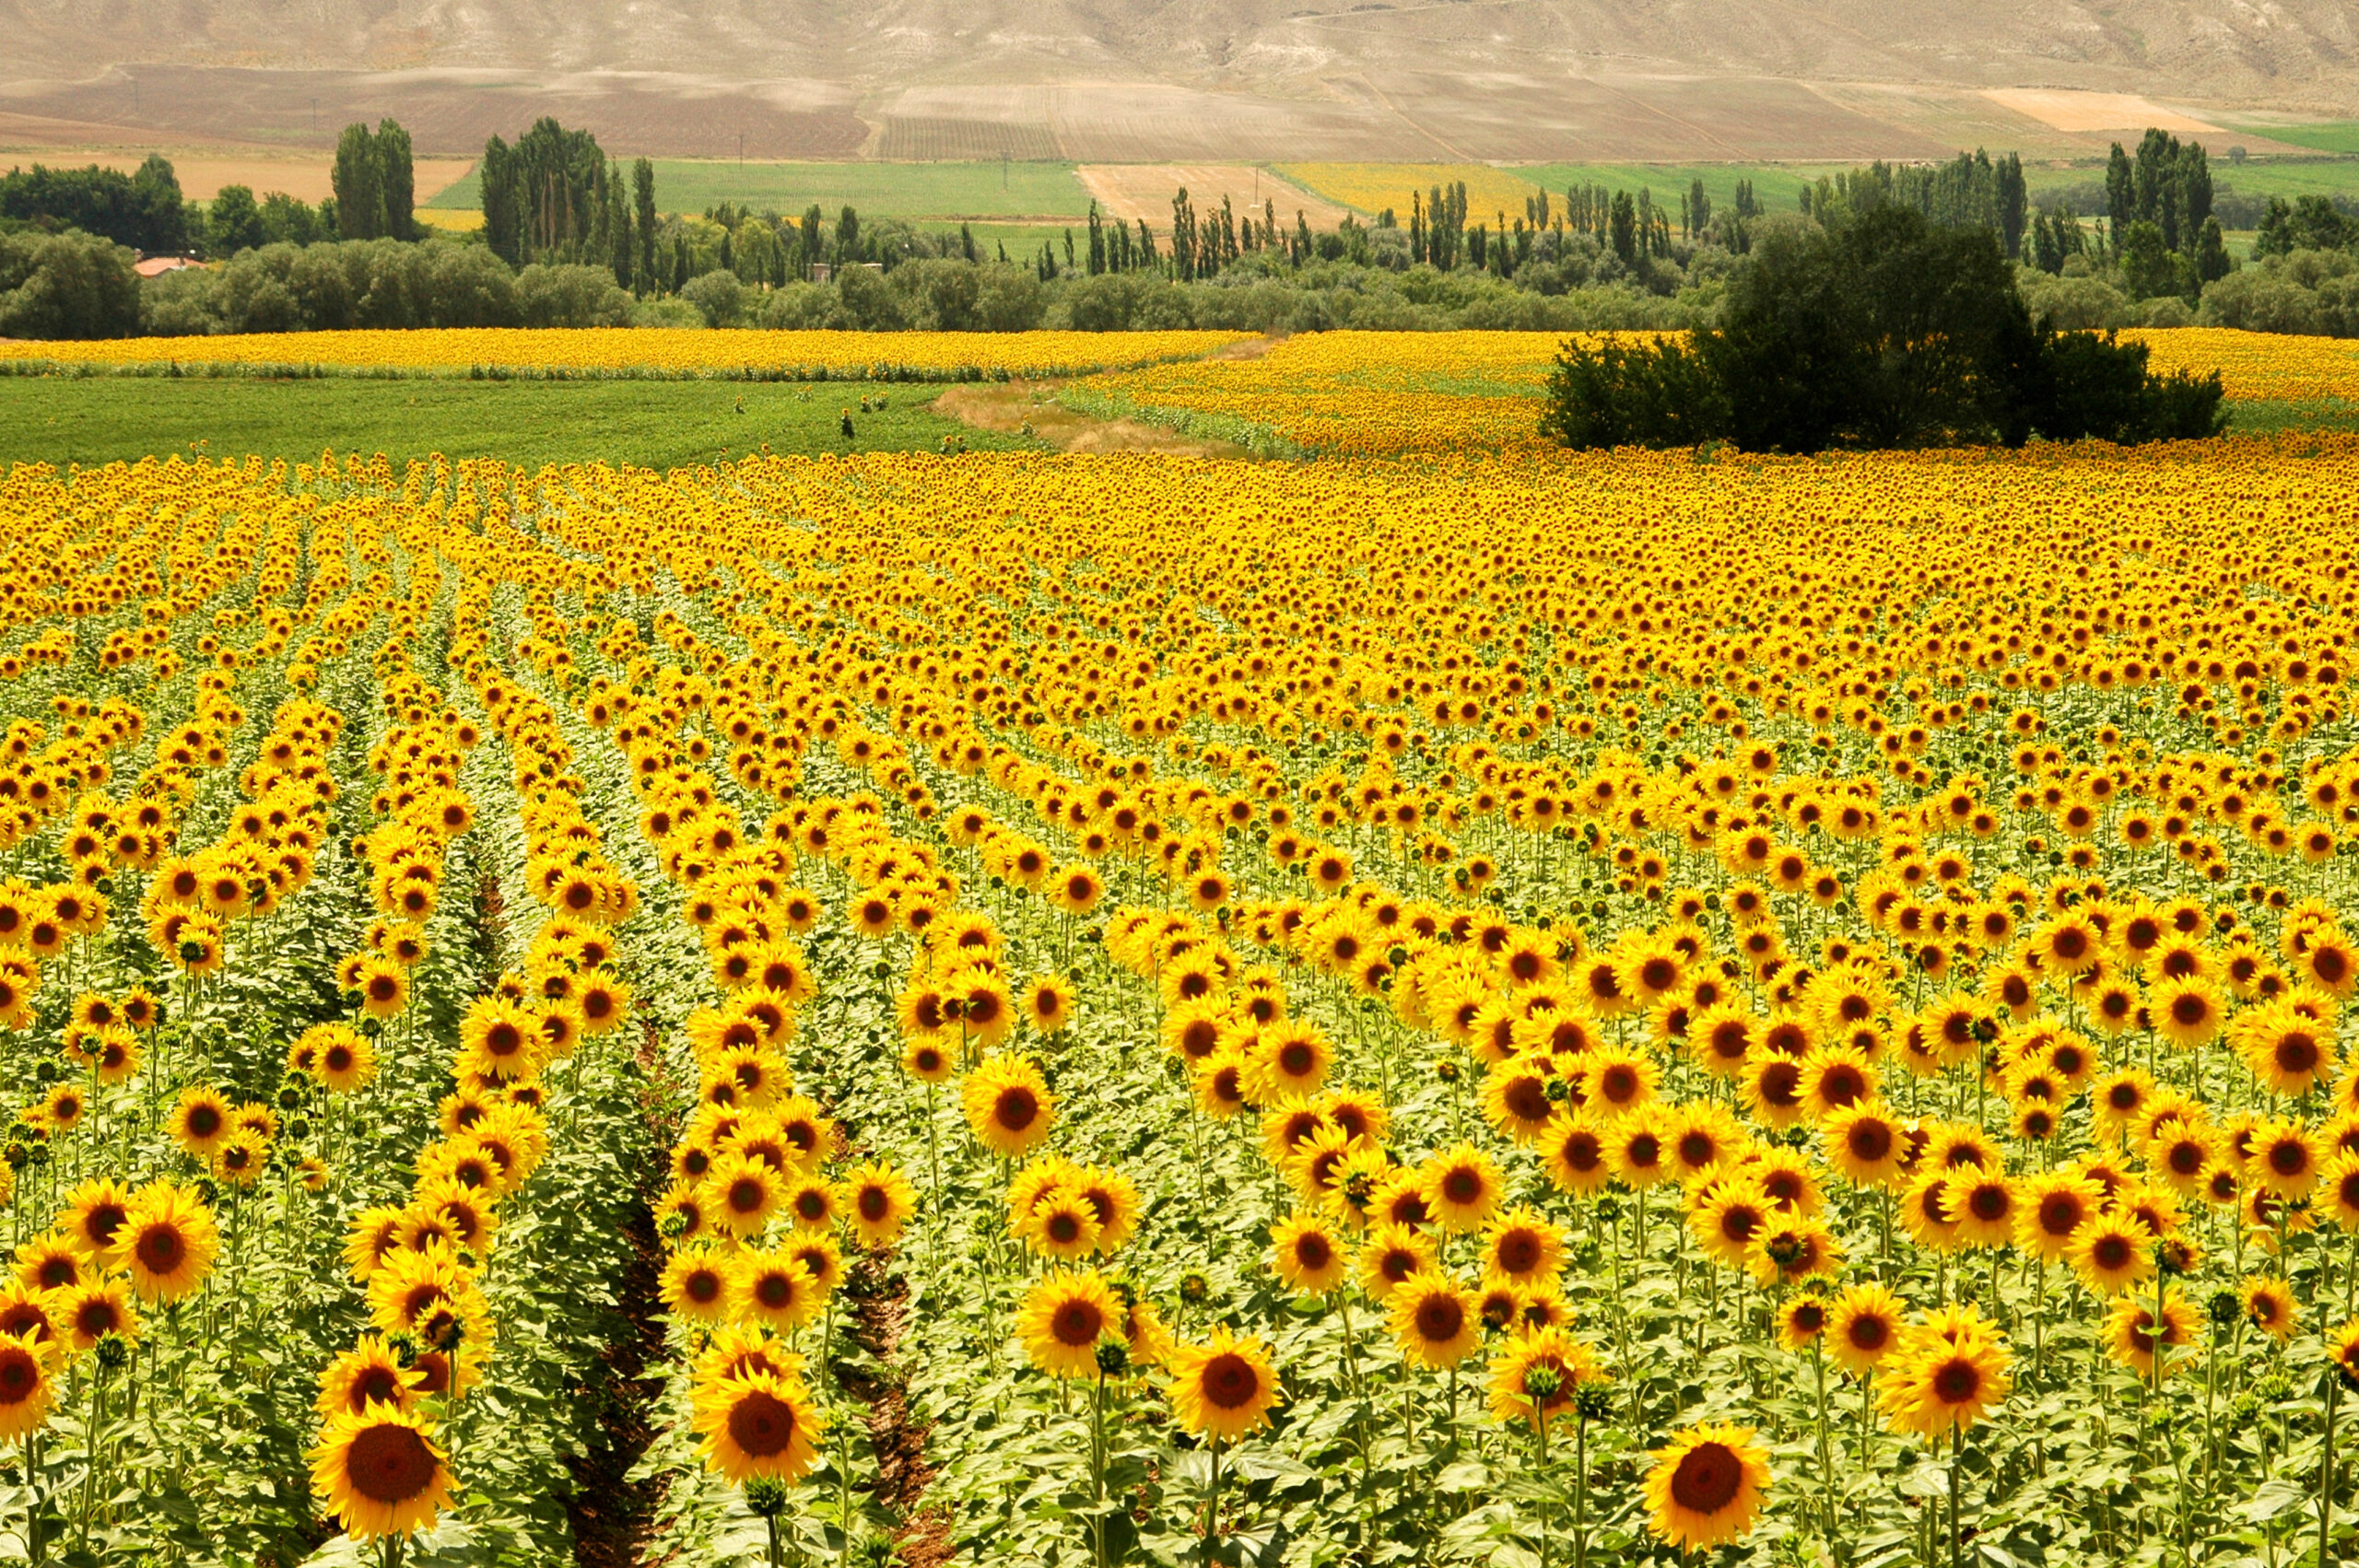 Sunflower fields in Turkey countryside(dreamstime)